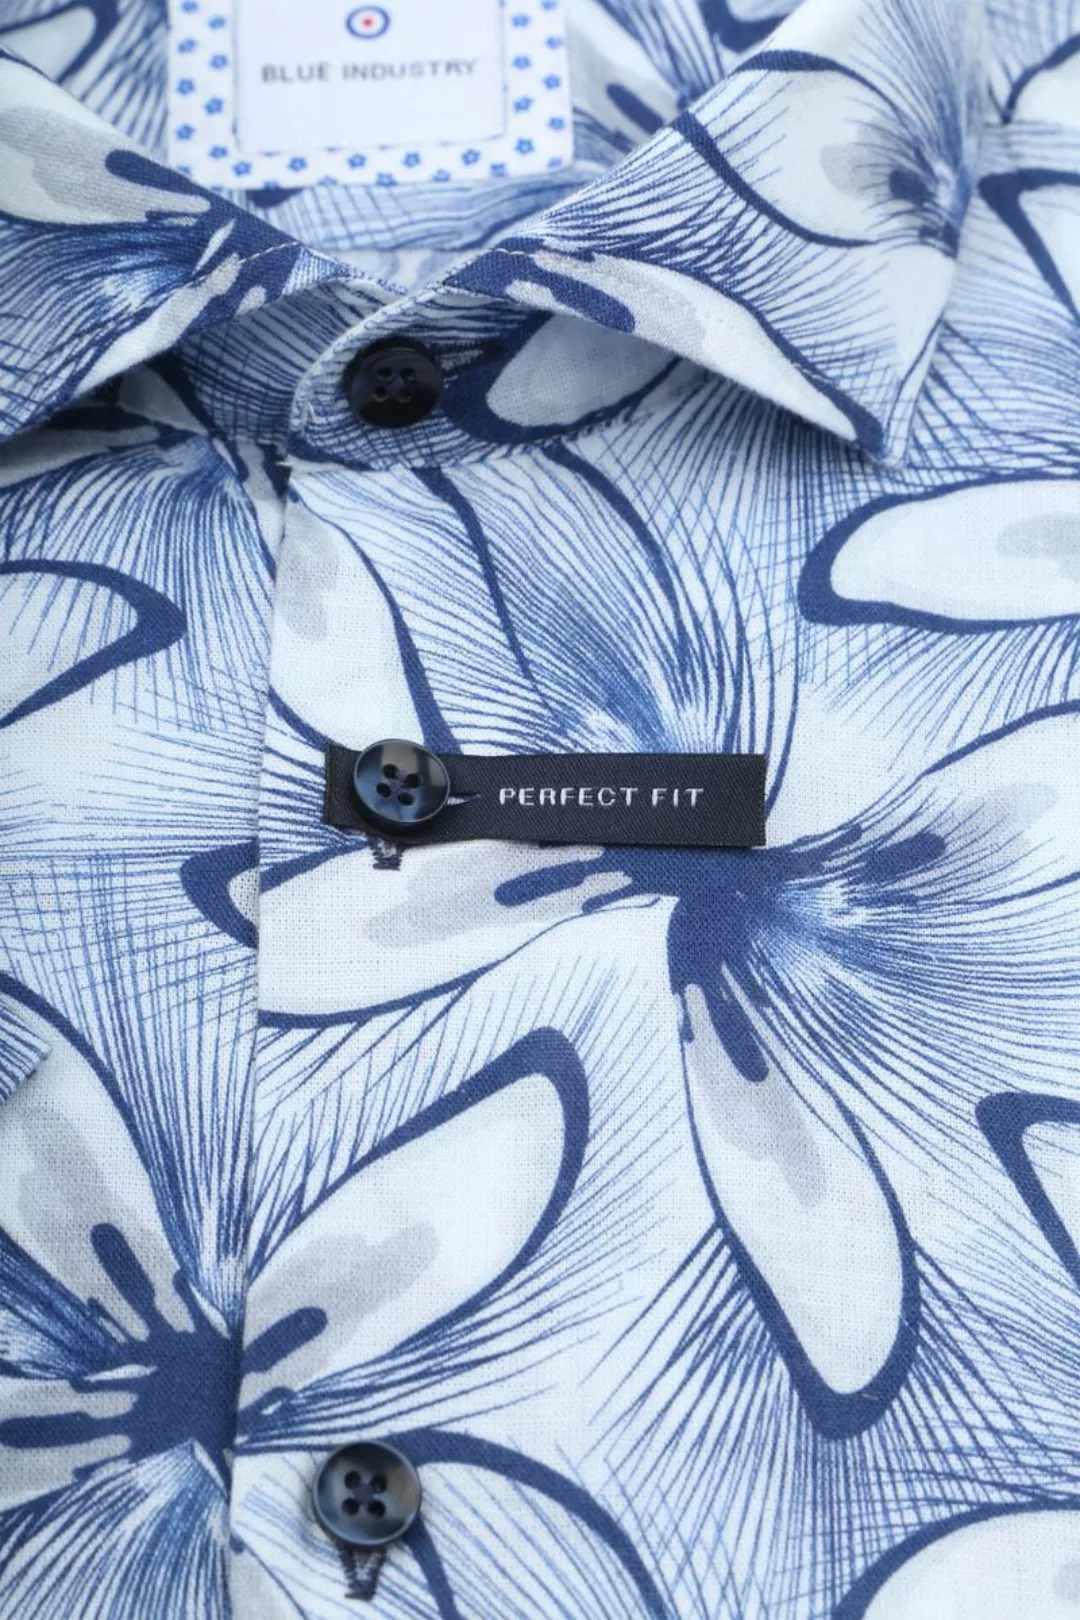 Blue Industry Short Sleeve Hemd Leinen Druck Blau - Größe 42 günstig online kaufen